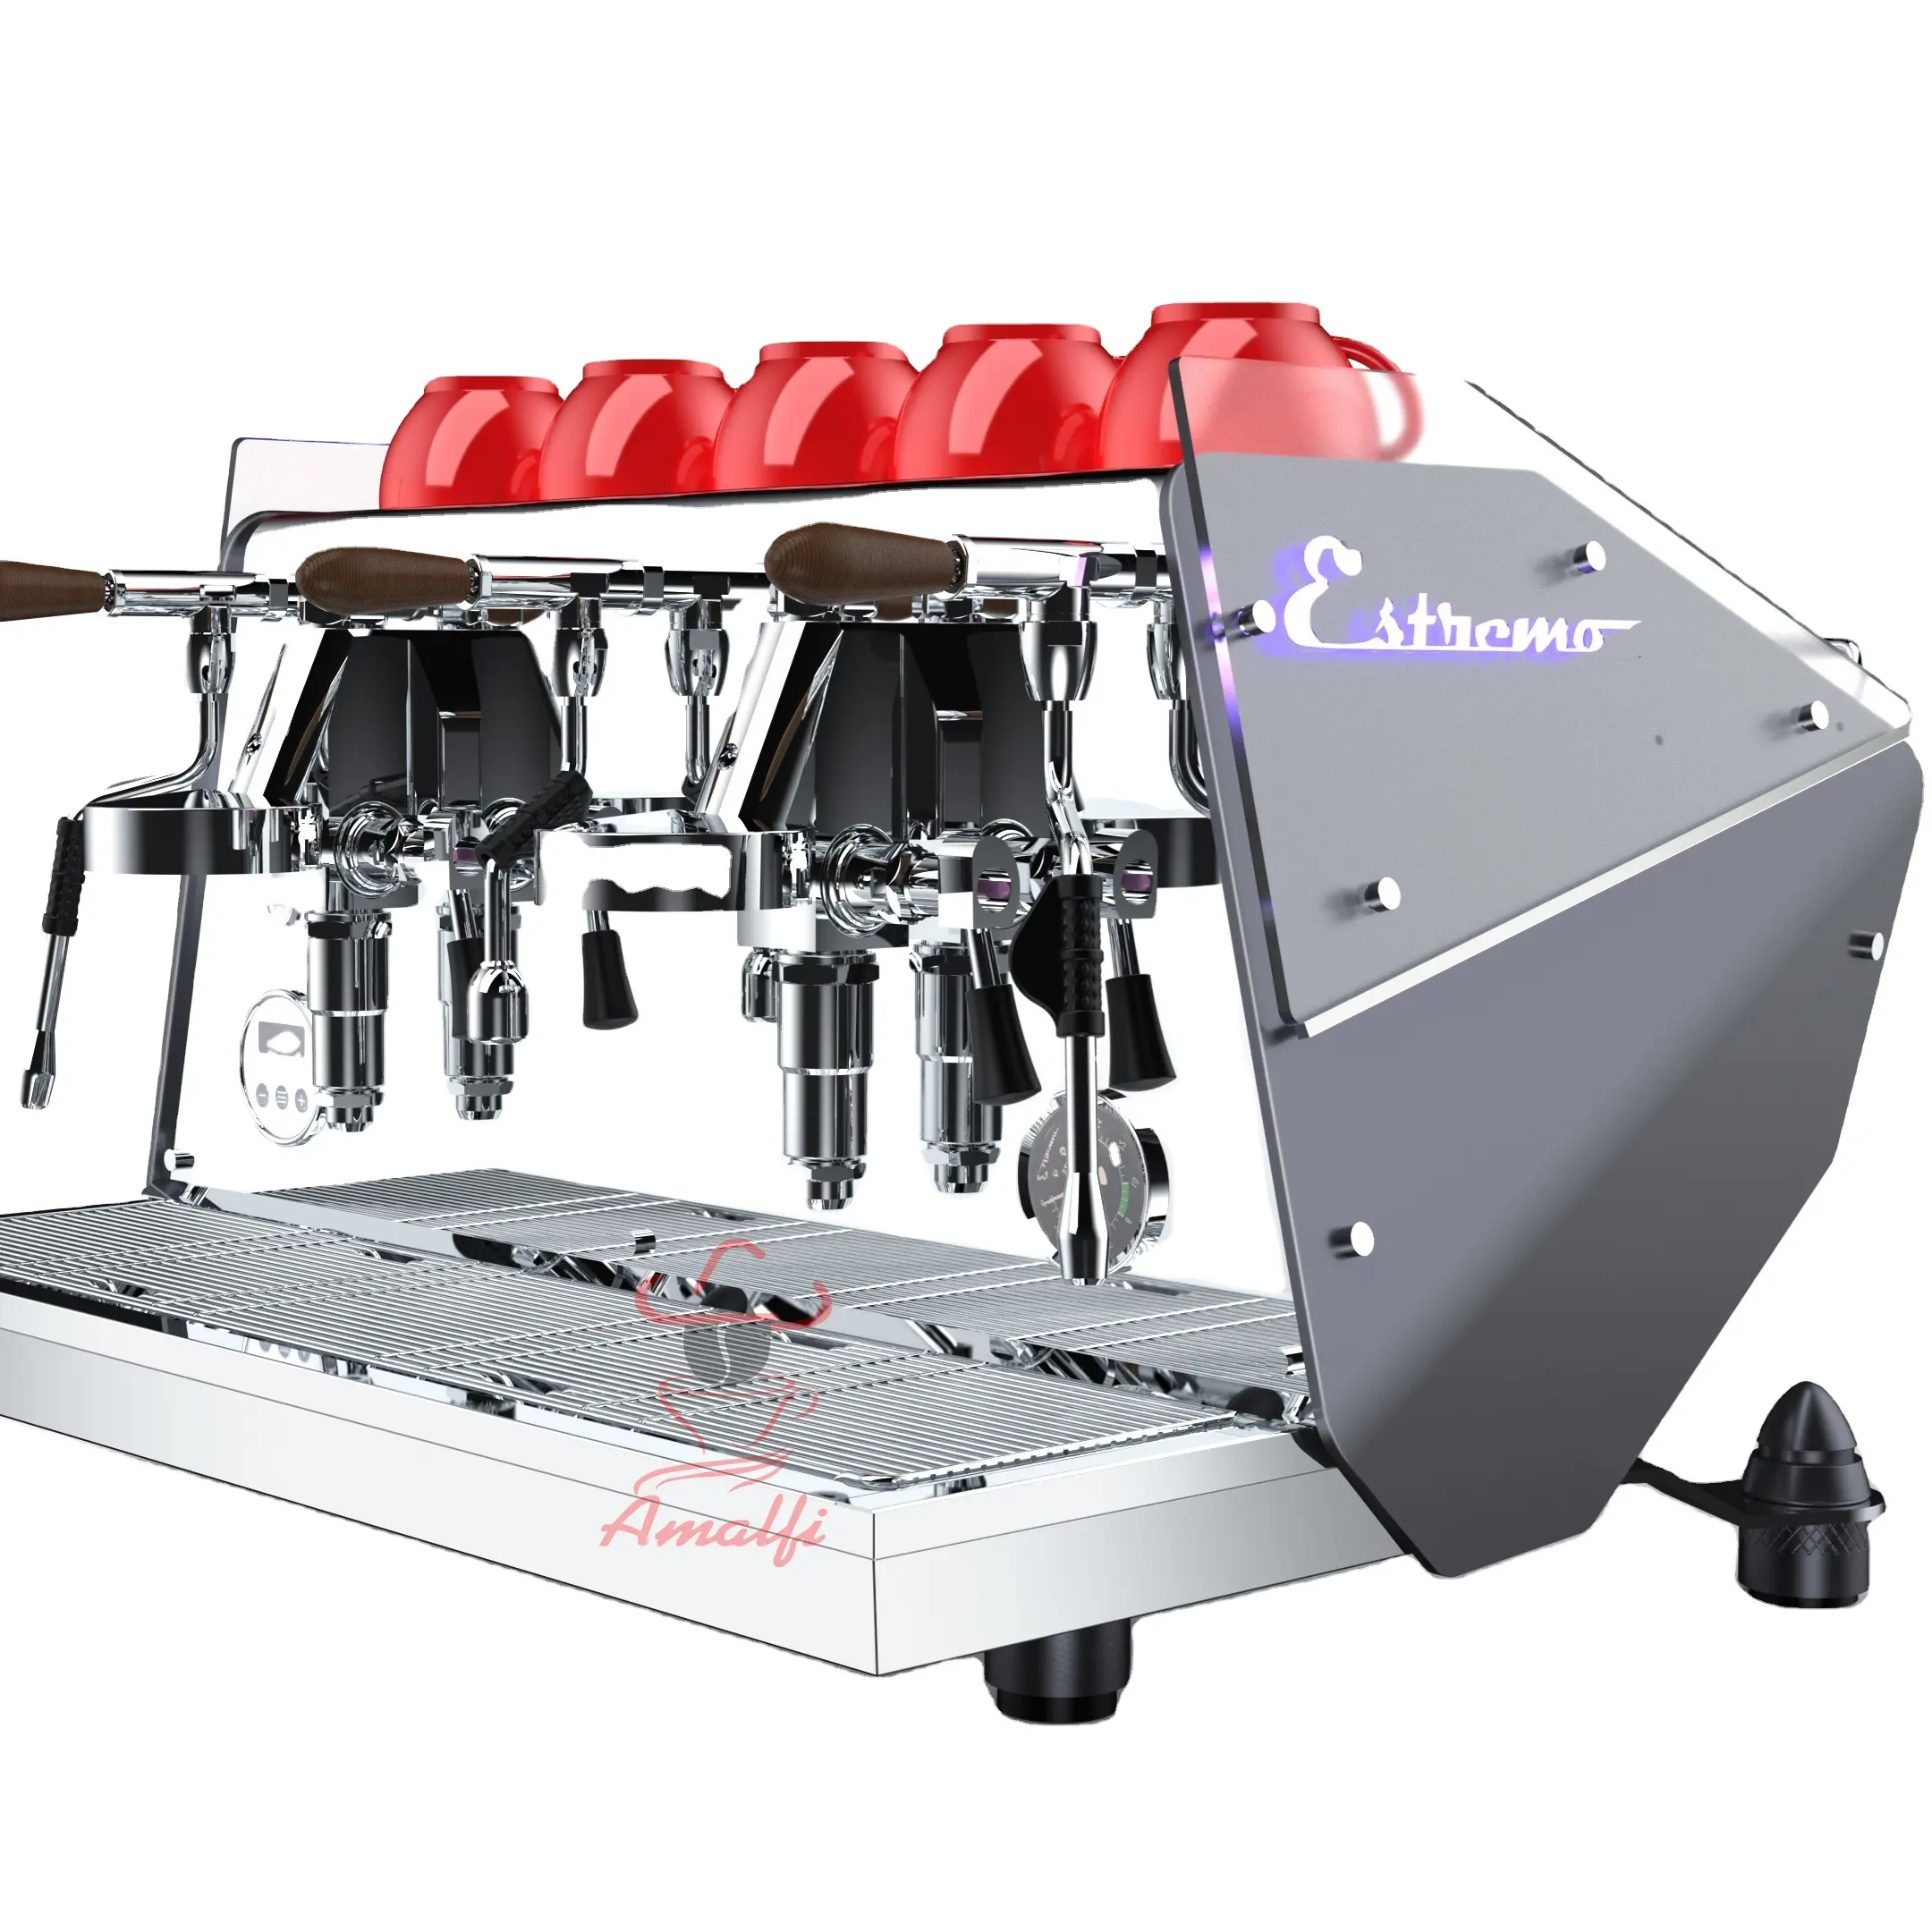 großhandel professionelle elektronische steuerung gewerbe espresso-maschine smart kaffee manipulator elektrische kaffeemaschine maschine